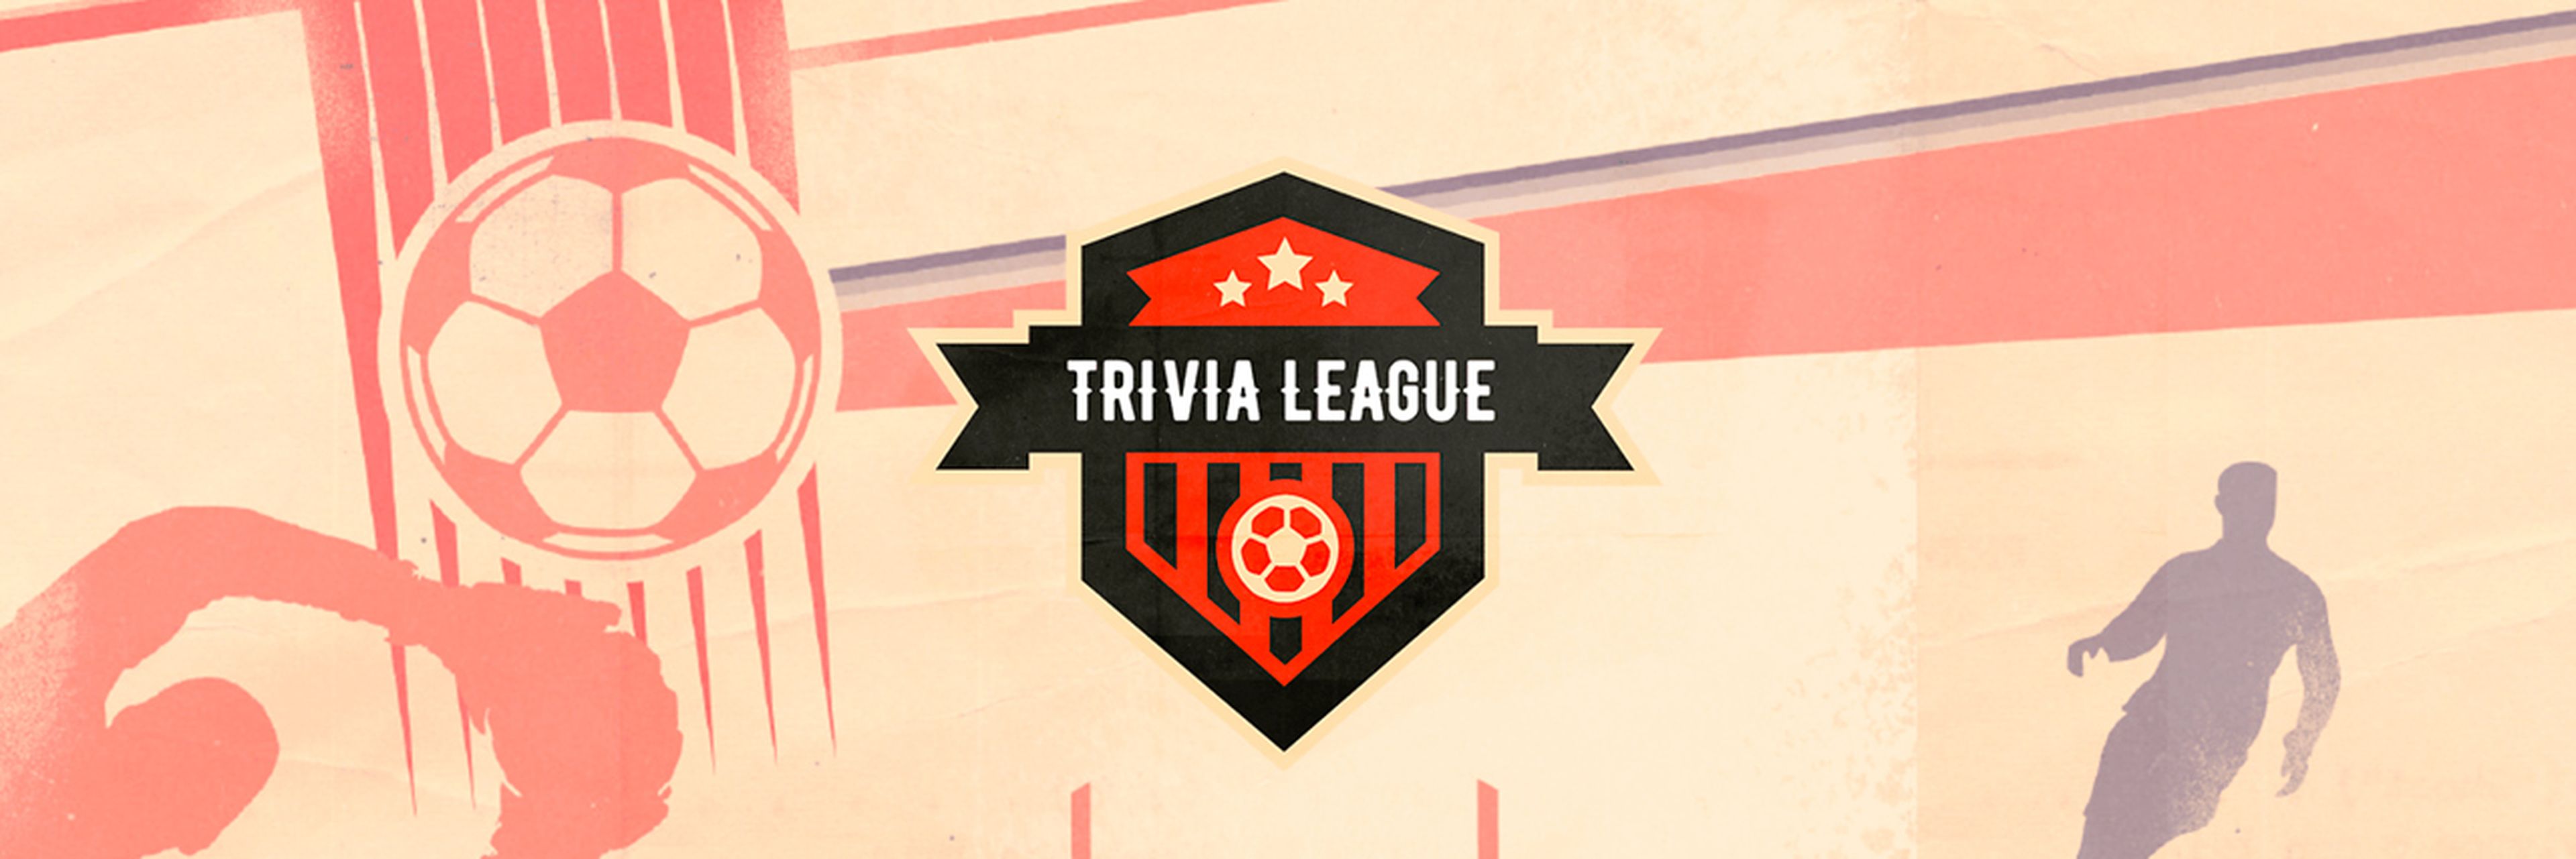 Trivia League